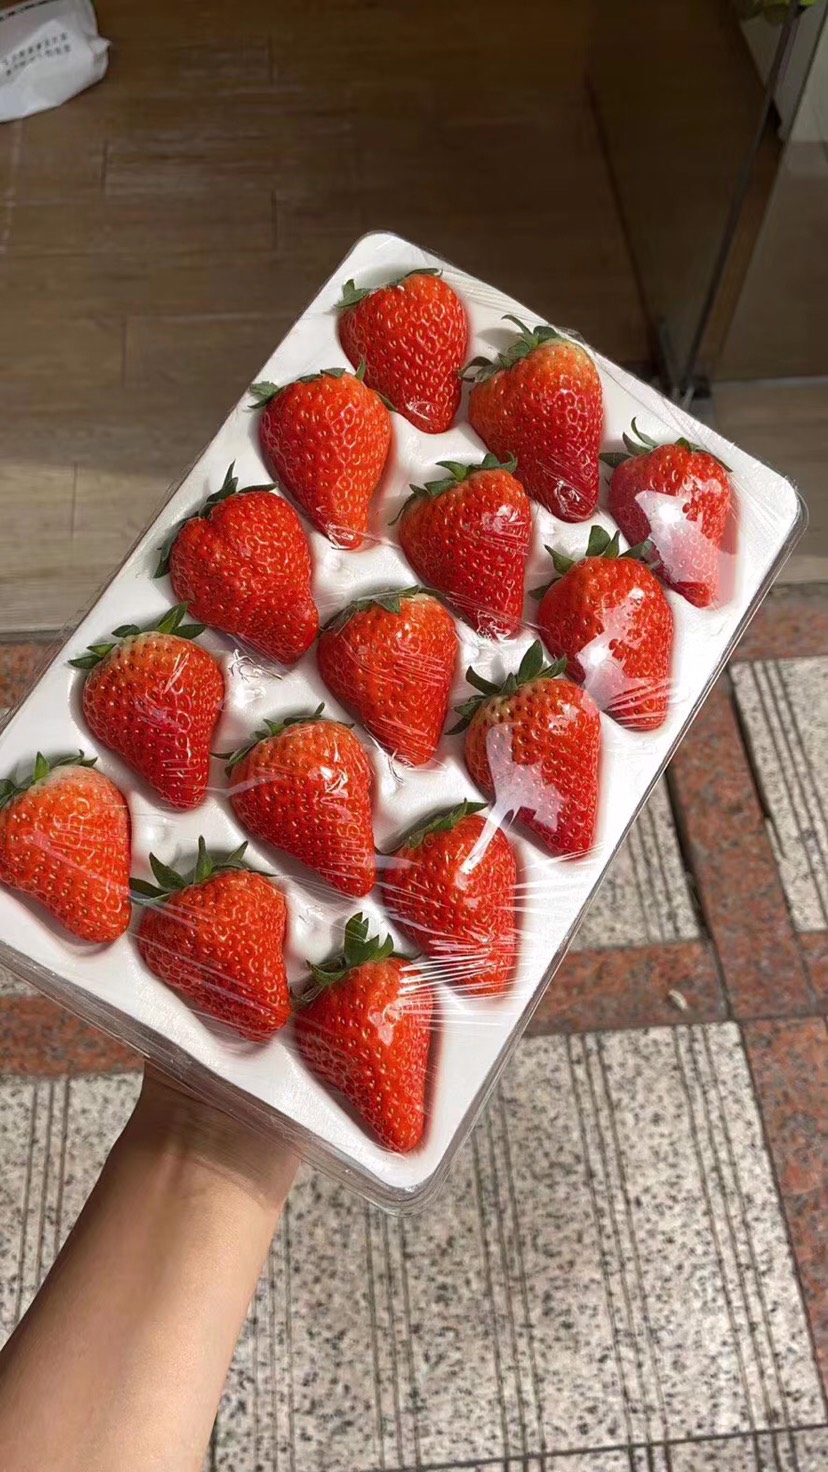 東港市紅顏草莓 丹東紅顏九九牛奶草莓膠盒防摔包裝 誠招全國實力批發